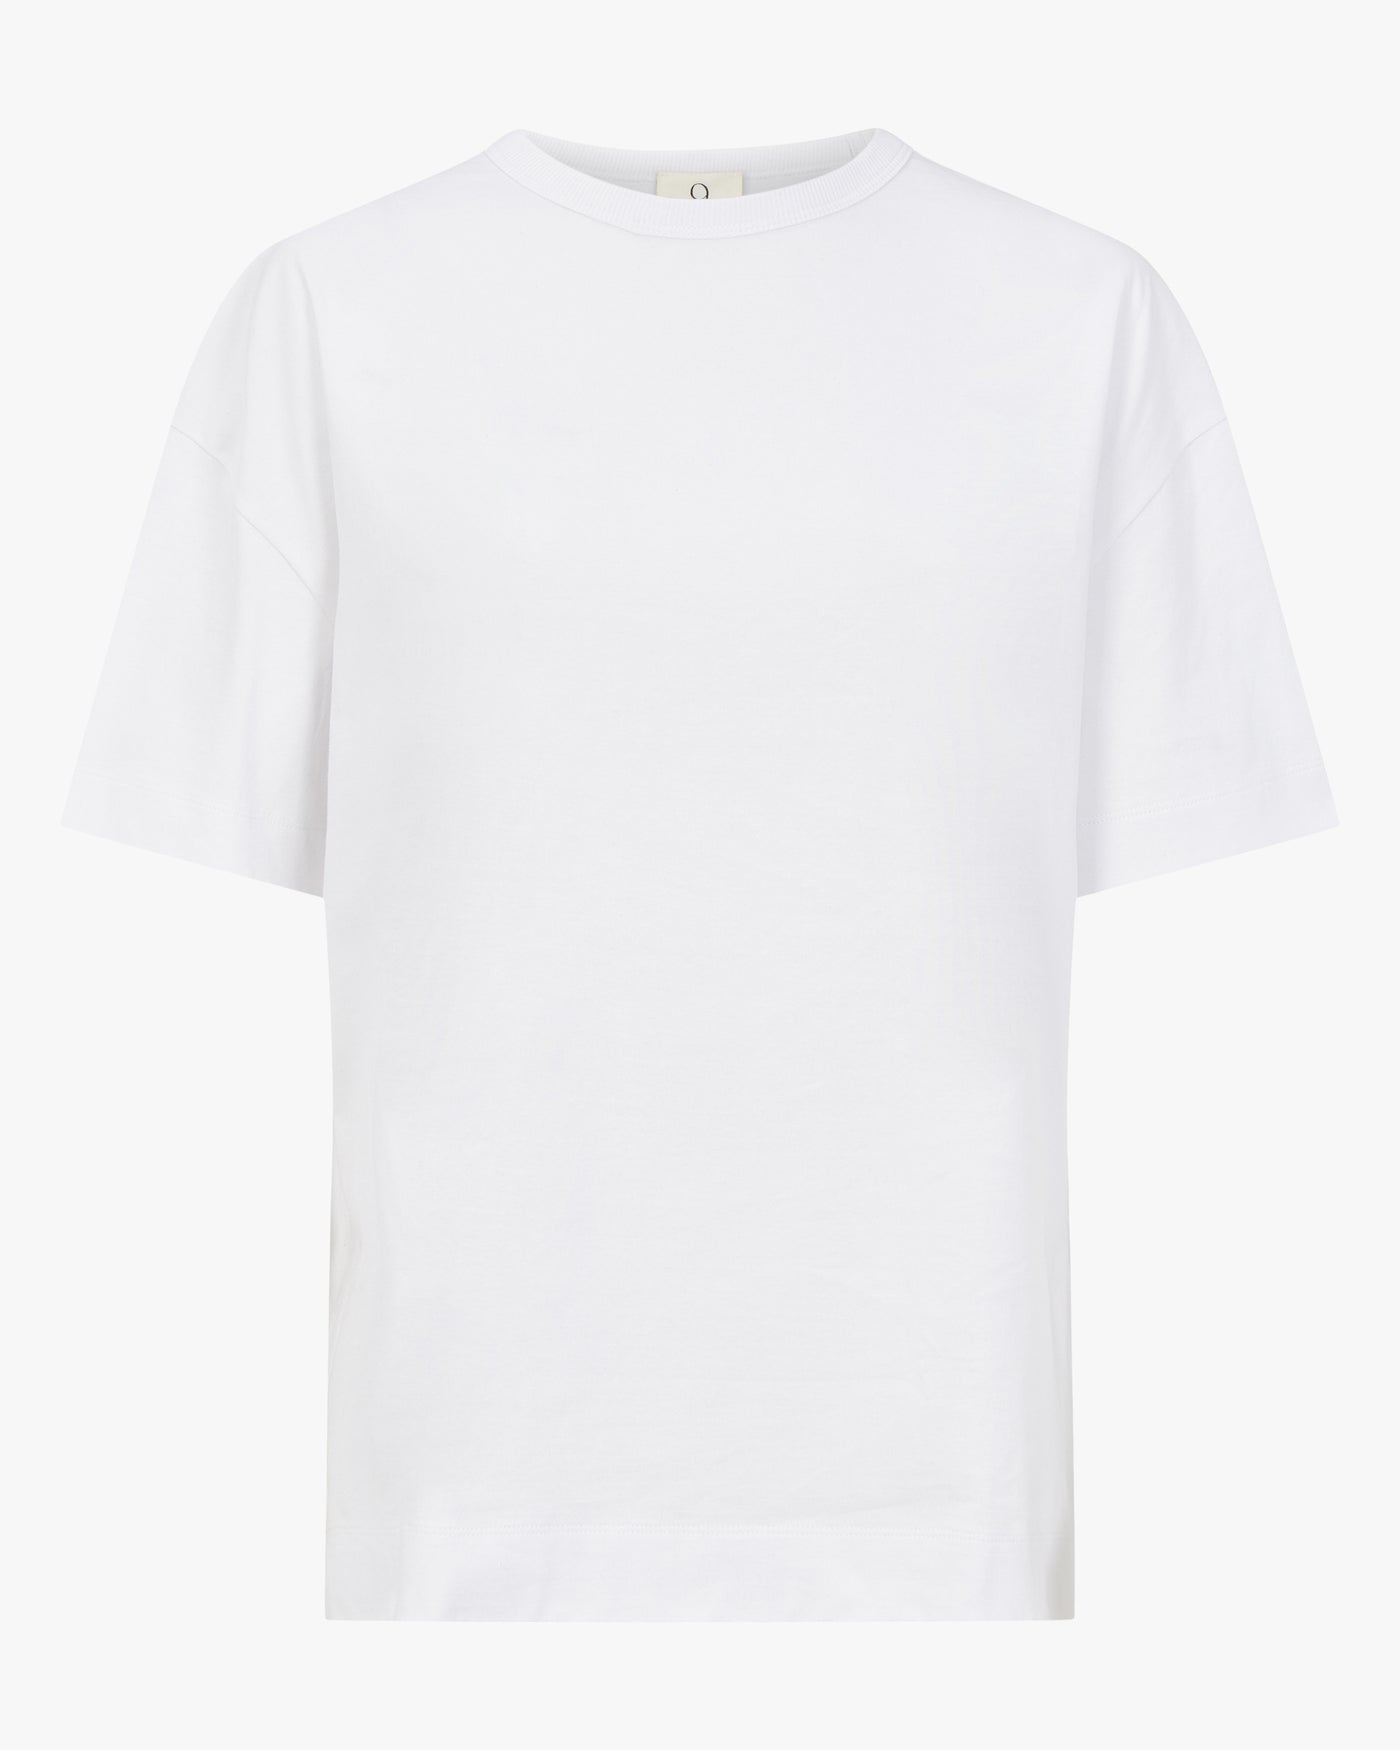 Lena Oversized T-Shirt in Whisper White